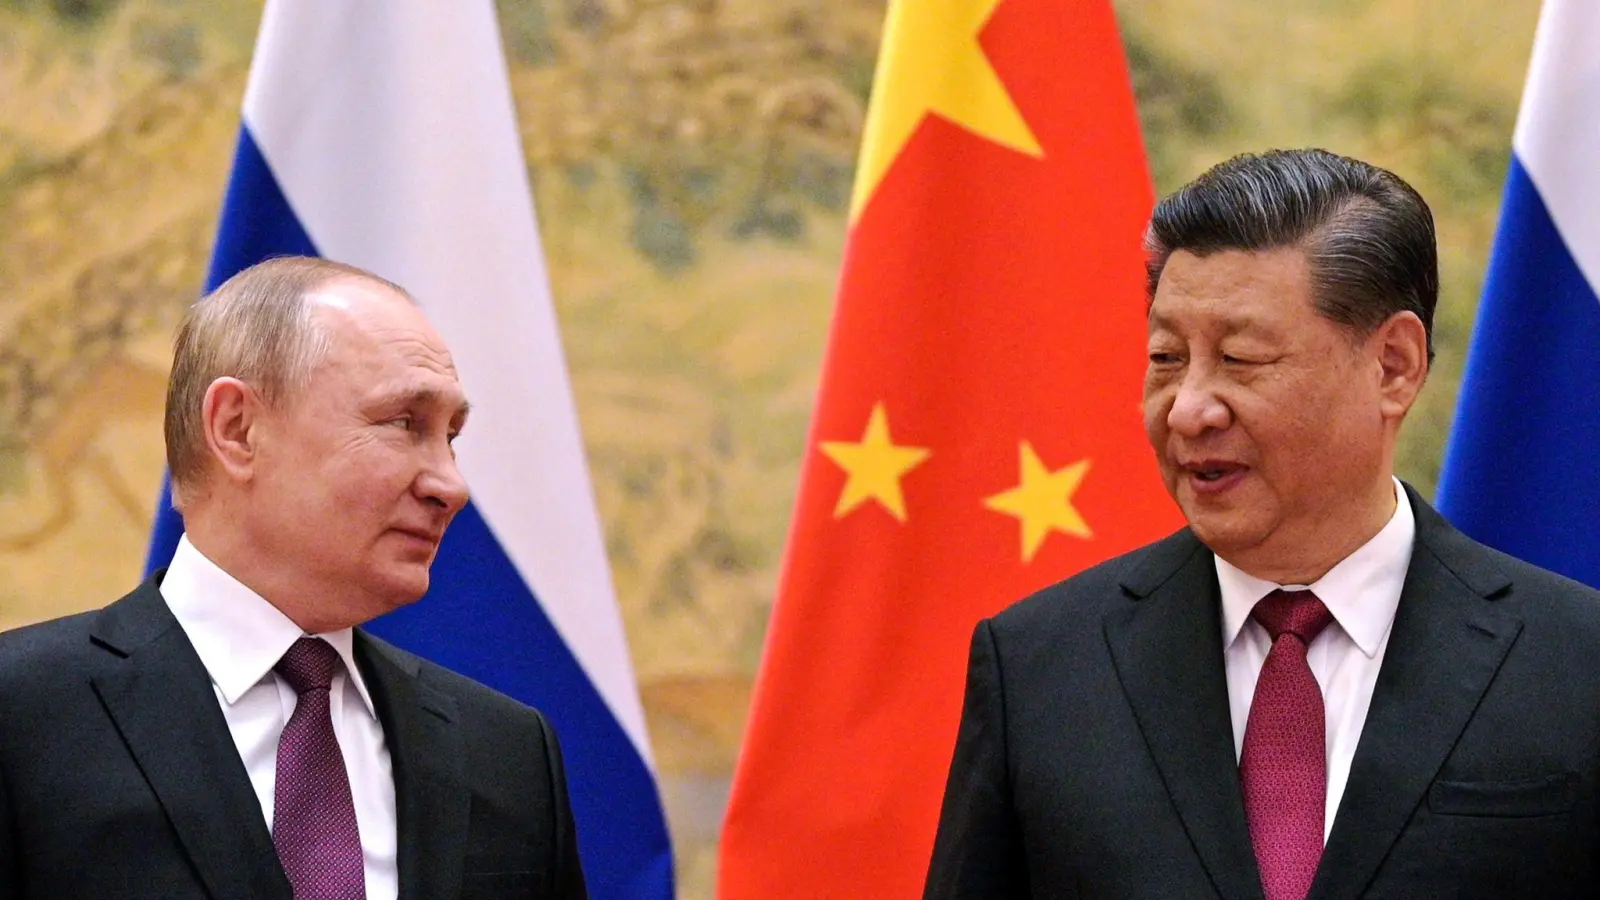 Kremlchef Wladimir Putin (l.) beim Treffen mit Chinas Präsidenten Xi Jinping in Peking im Februar vergangenen Jahres. (Foto: Alexei Druzhinin/Sputnik Government/AP/dpa)